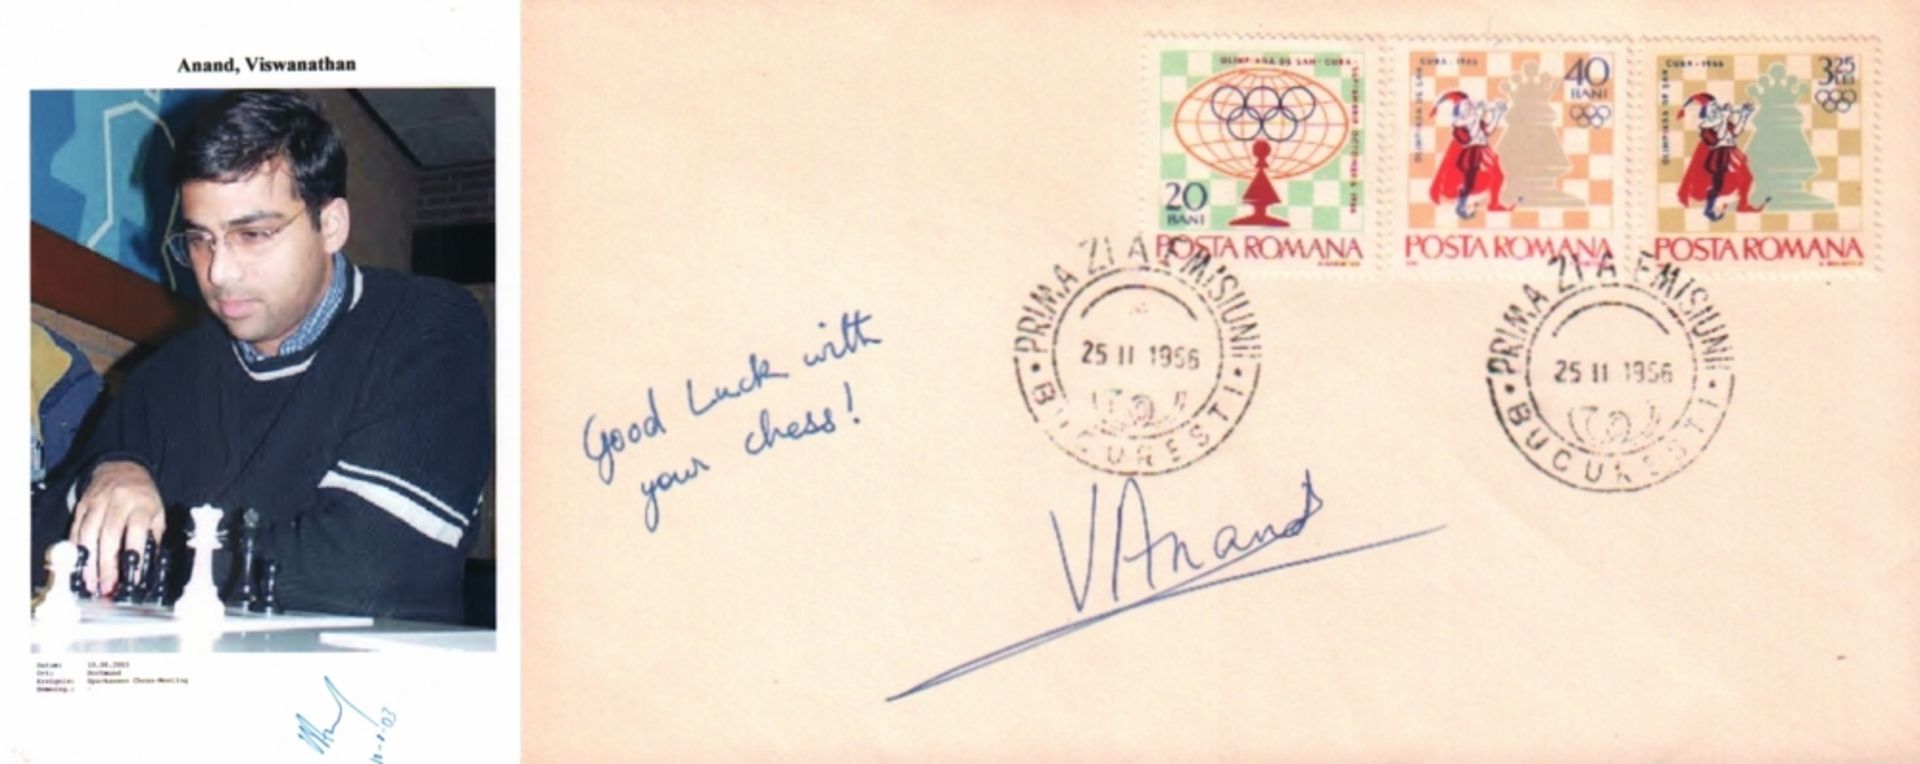 Anand, Viswanathan. Briefumschlag mit 3 rumänischen Briefmarken mit Schachmotiv, 2 Stempeln und